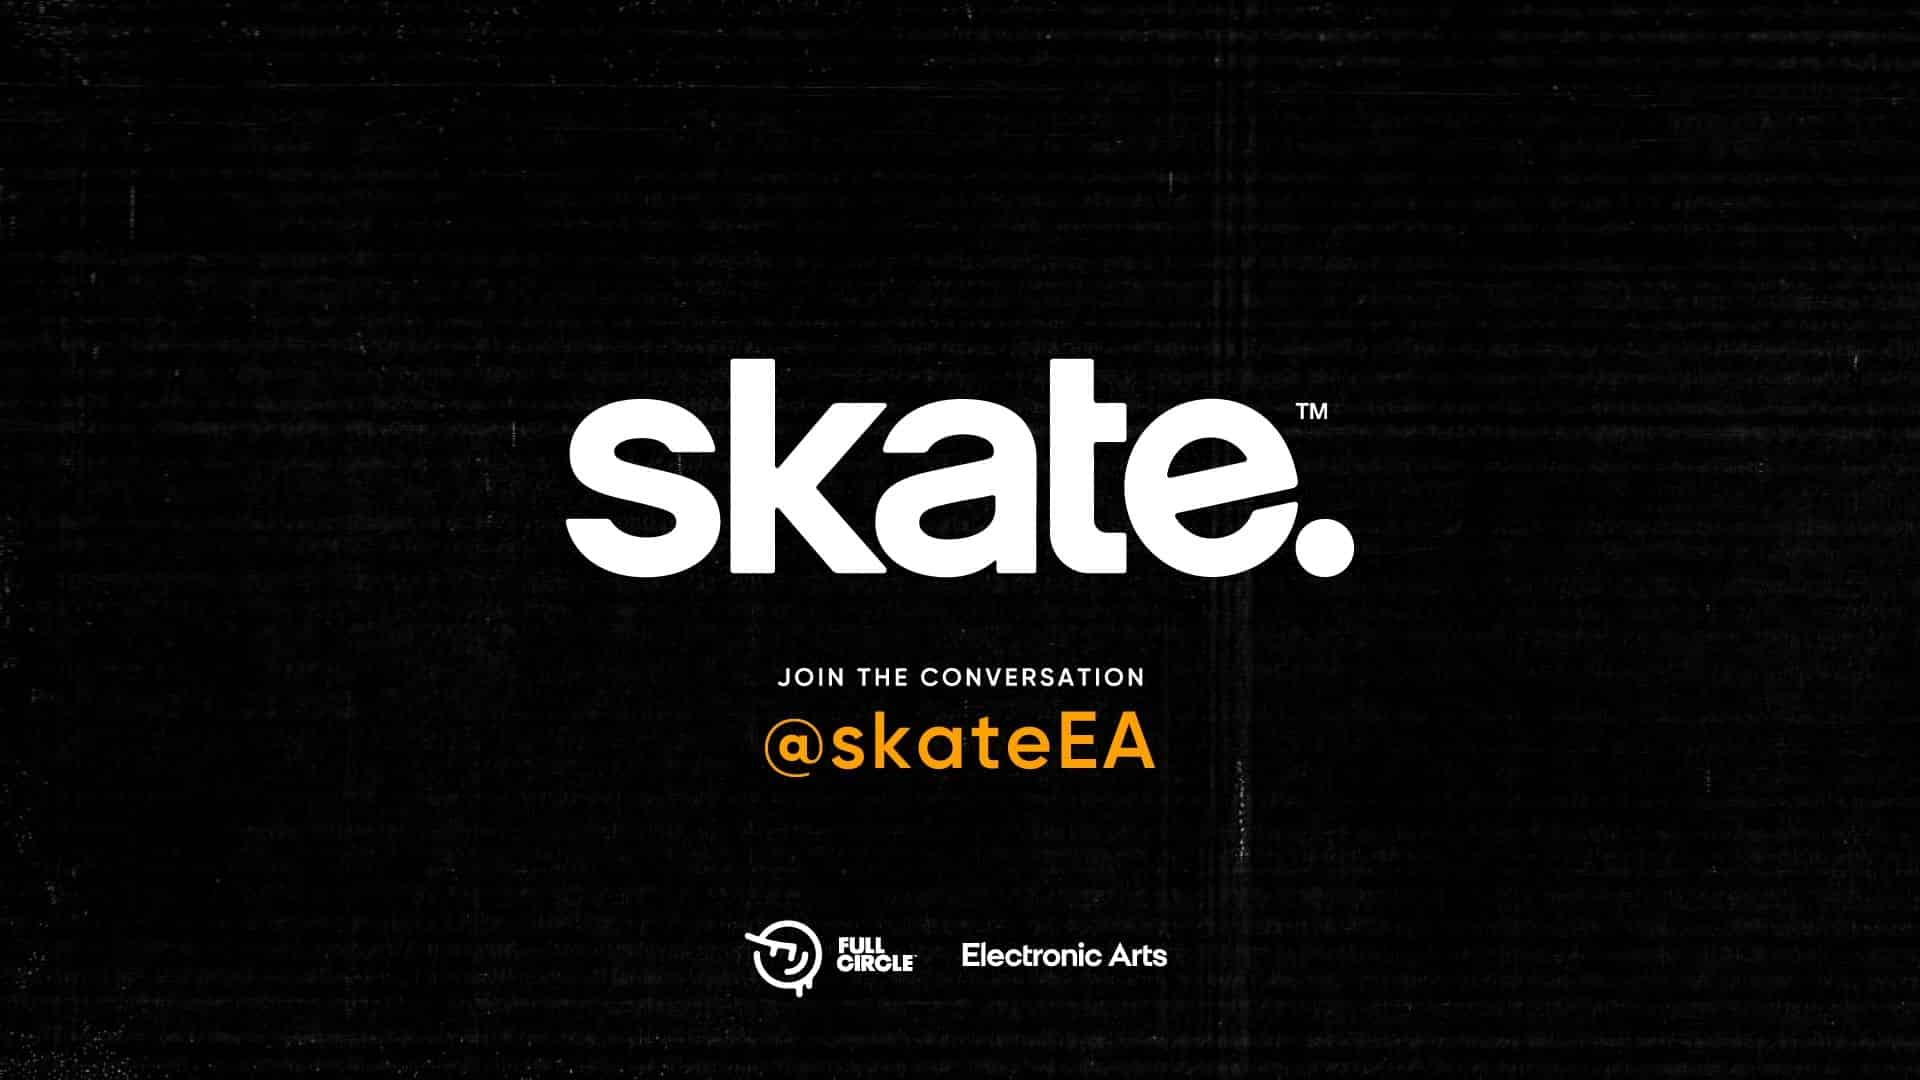 Skate GamersRD